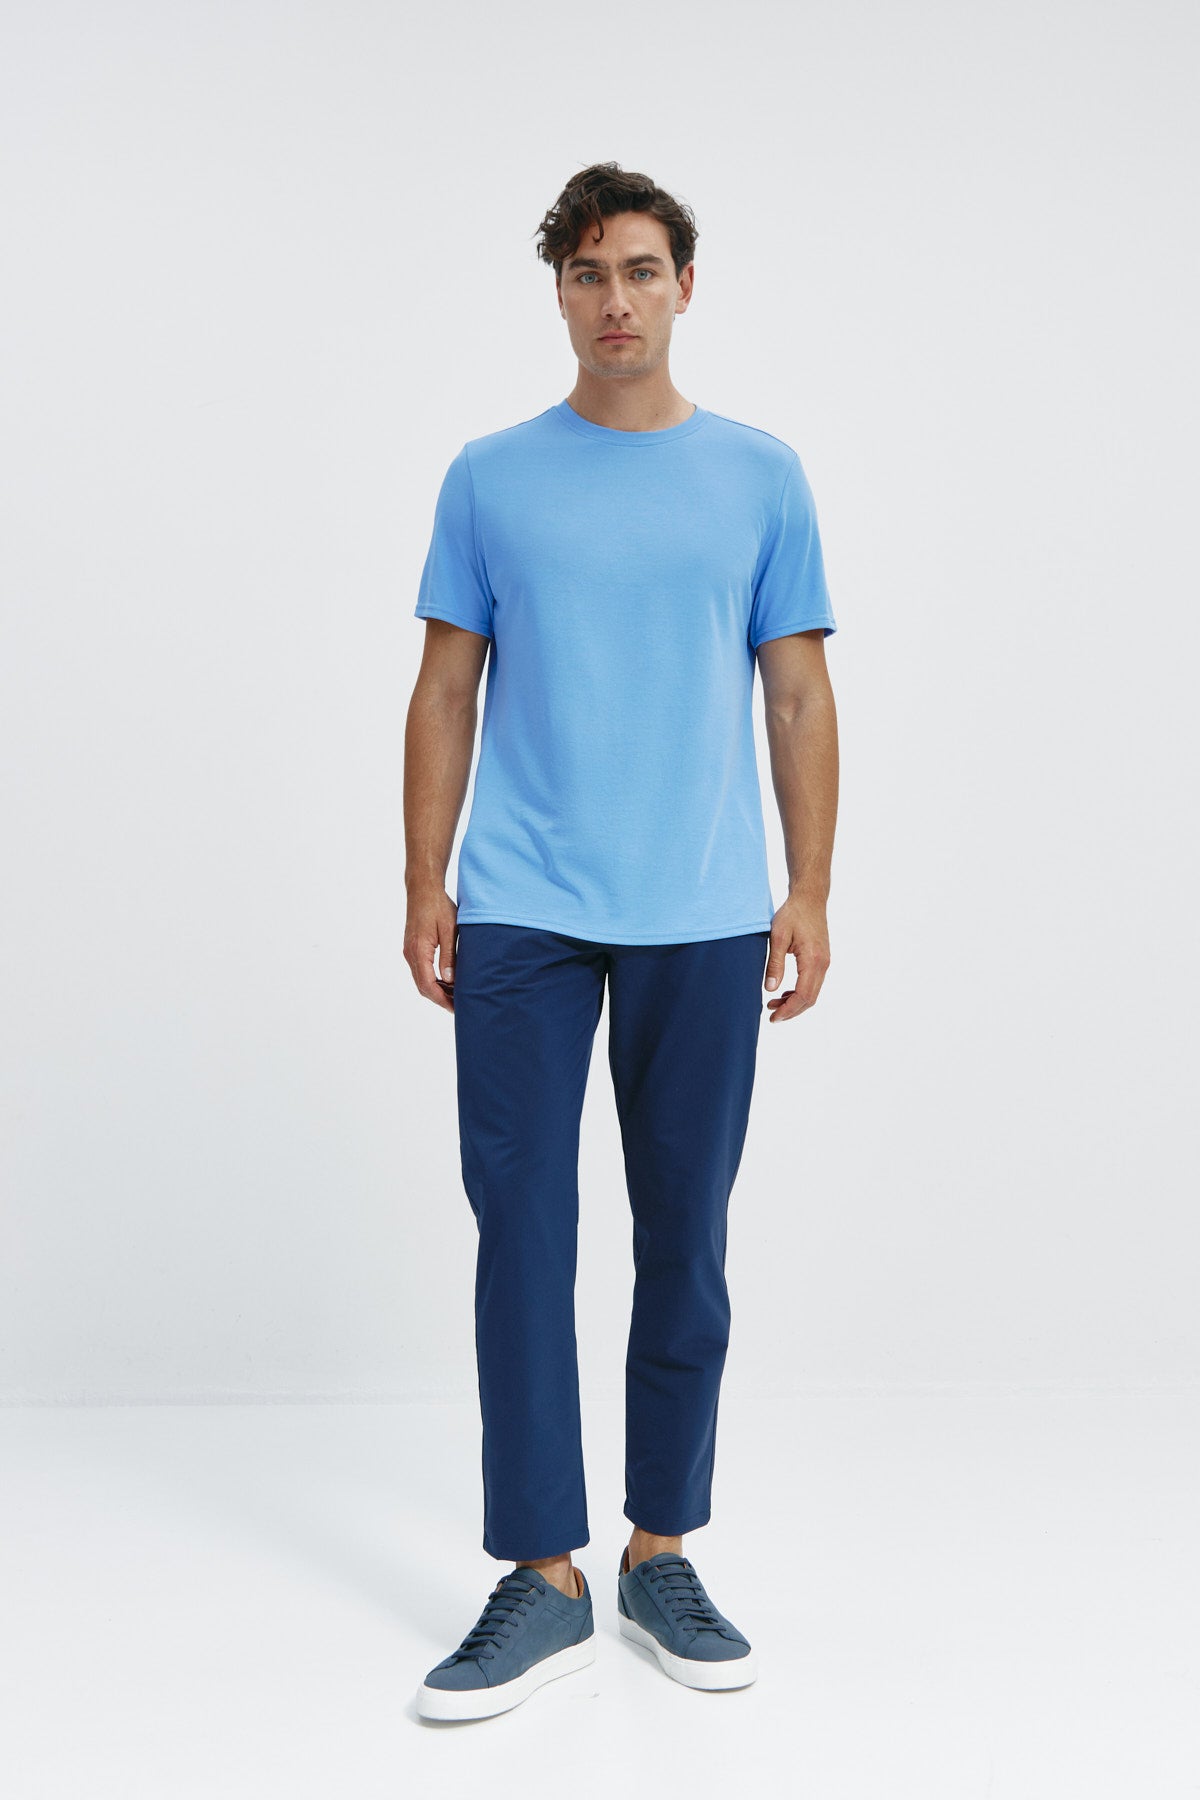 Camiseta de hombre en azul atlas de Sepiia, estilo y comodidad en una prenda duradera. Foto cuerpo entero